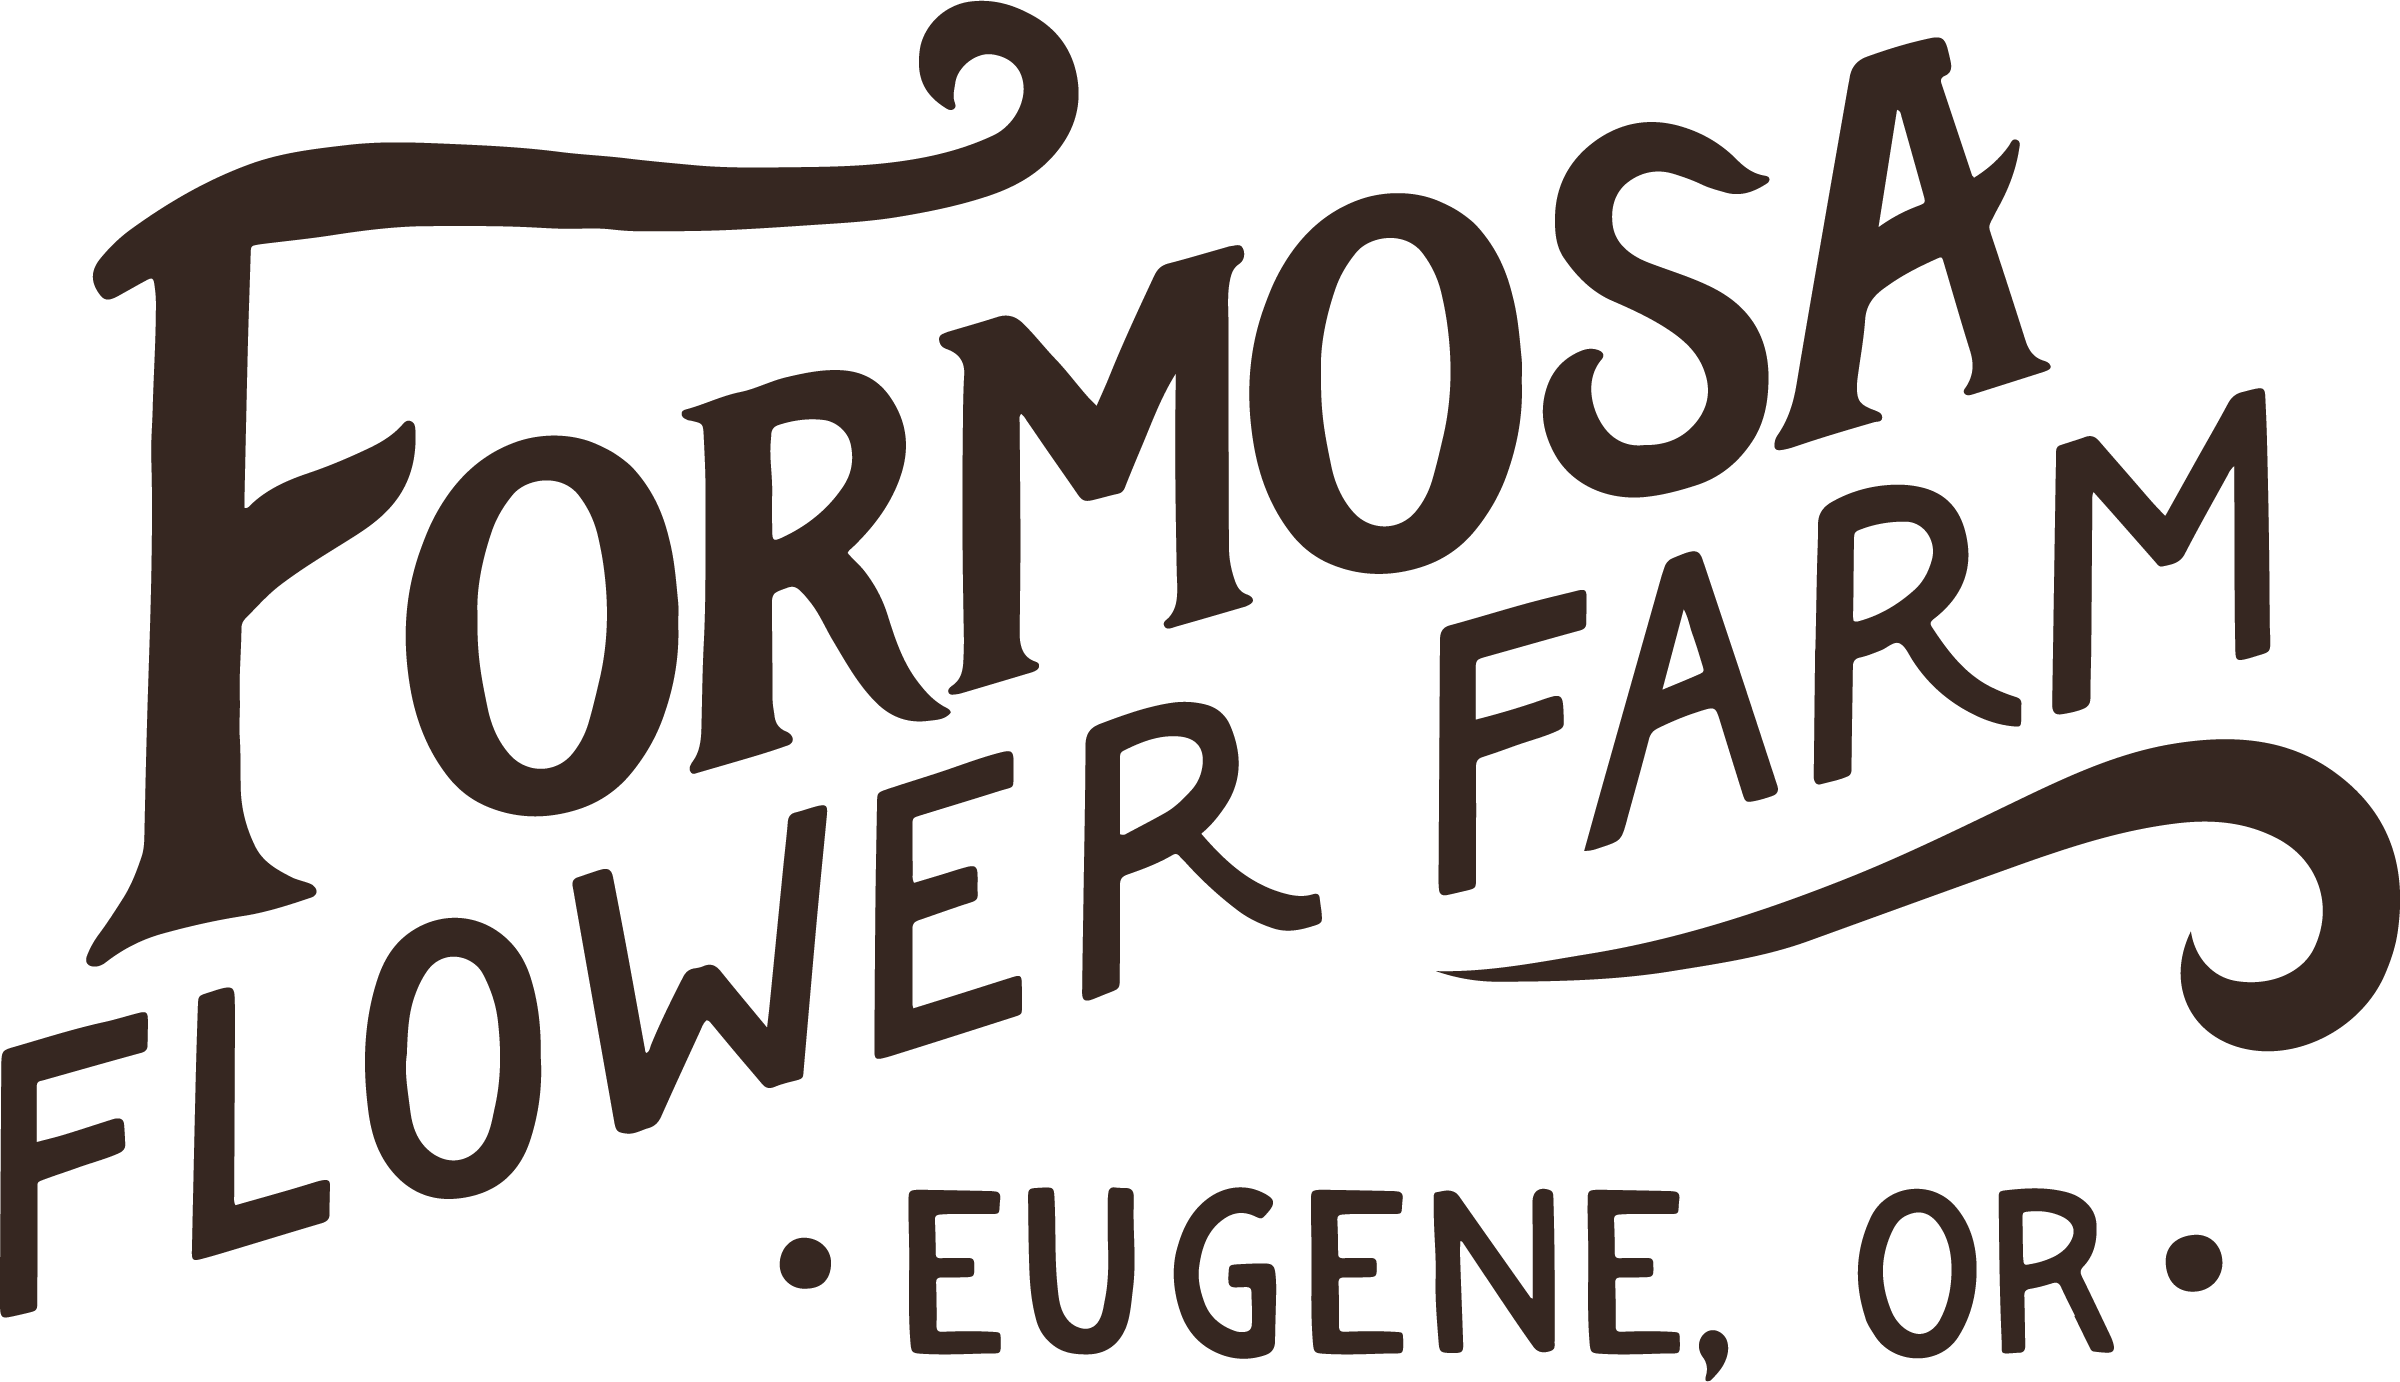 FORMOSA FLOWER FARM